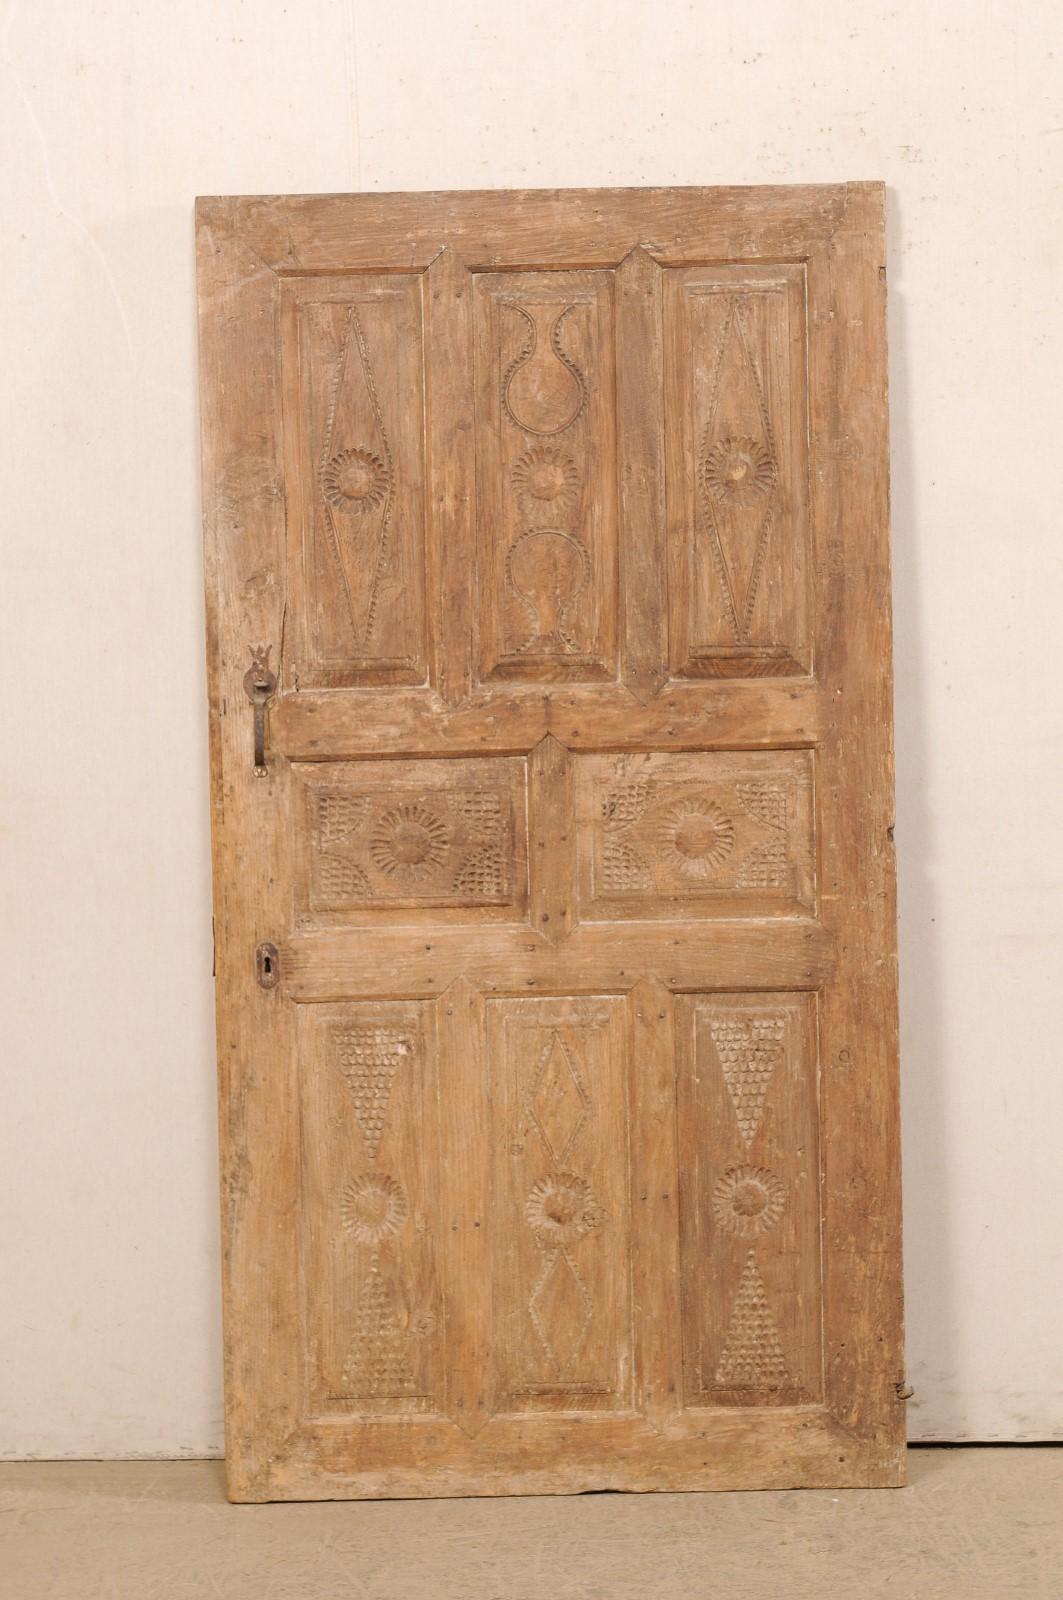 Porte turque à panneau surélevé du XIXe siècle. Cette porte ancienne de Turquie présente un joli motif à 8 panneaux en relief sur sa façade, avec des motifs géométriques joliment encochés à la main qui ornent chacun des panneaux. La porte est plus